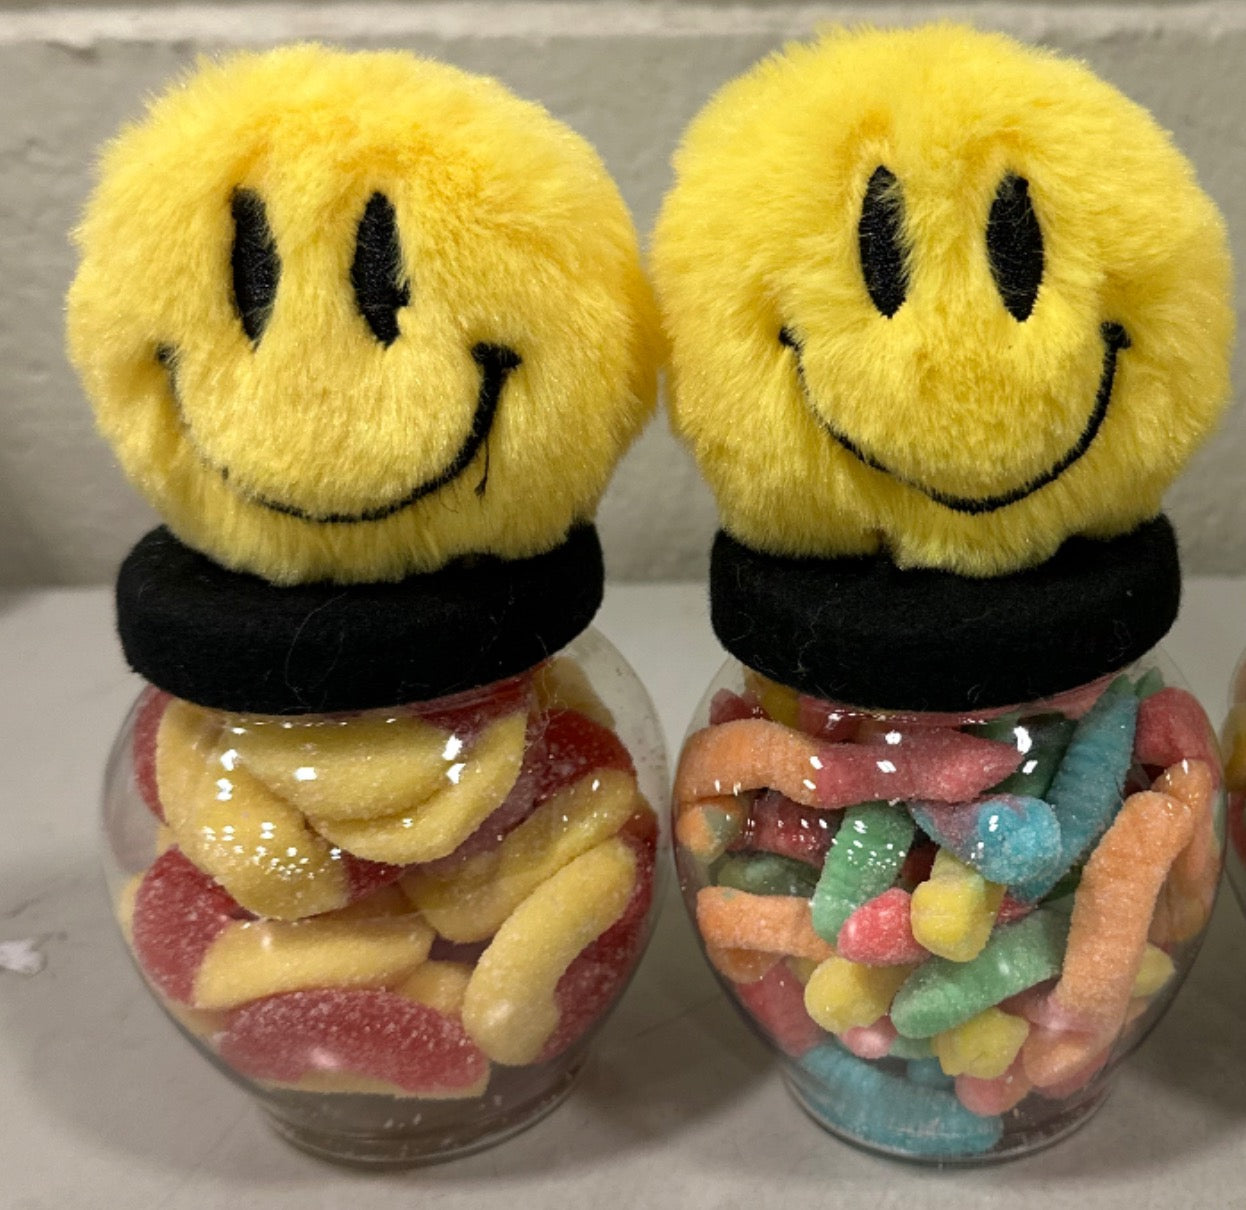 Smiley Jars